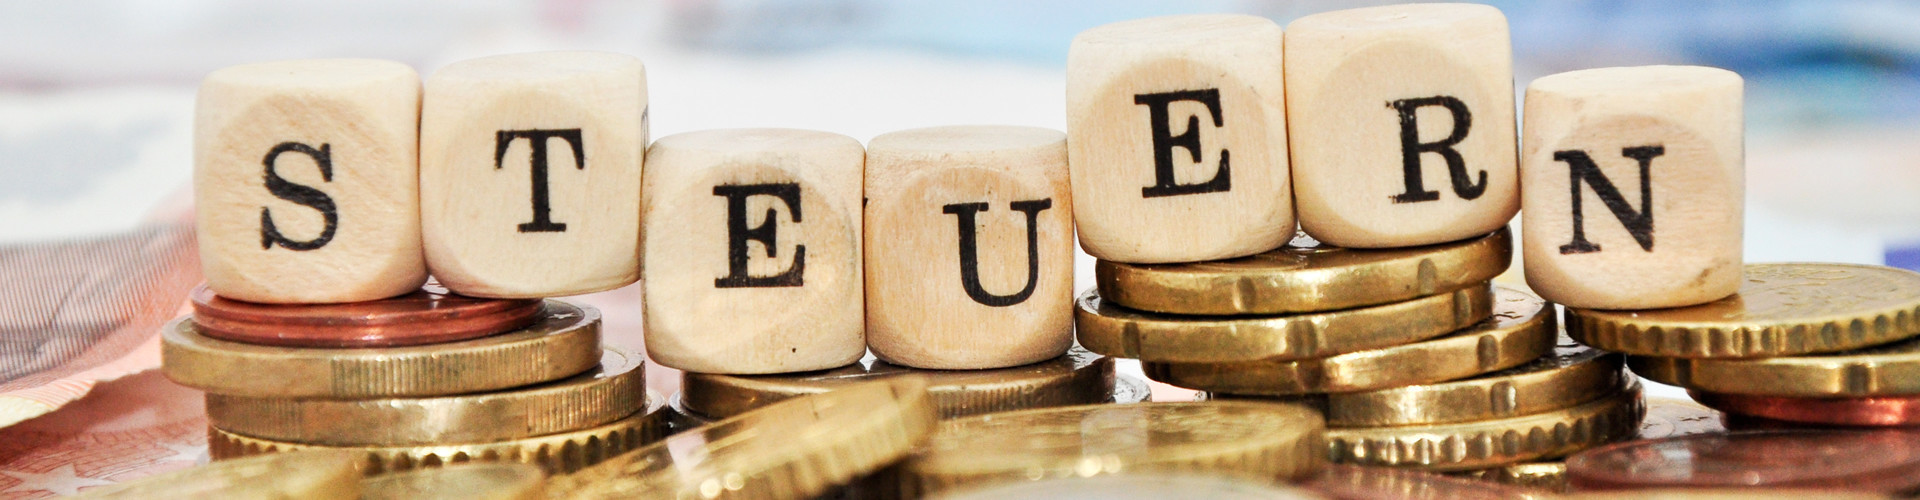 Buchstabenwürfel, welche auf einem Stapel Euro-Münzen liegen, bilden das Wort "Steuern"